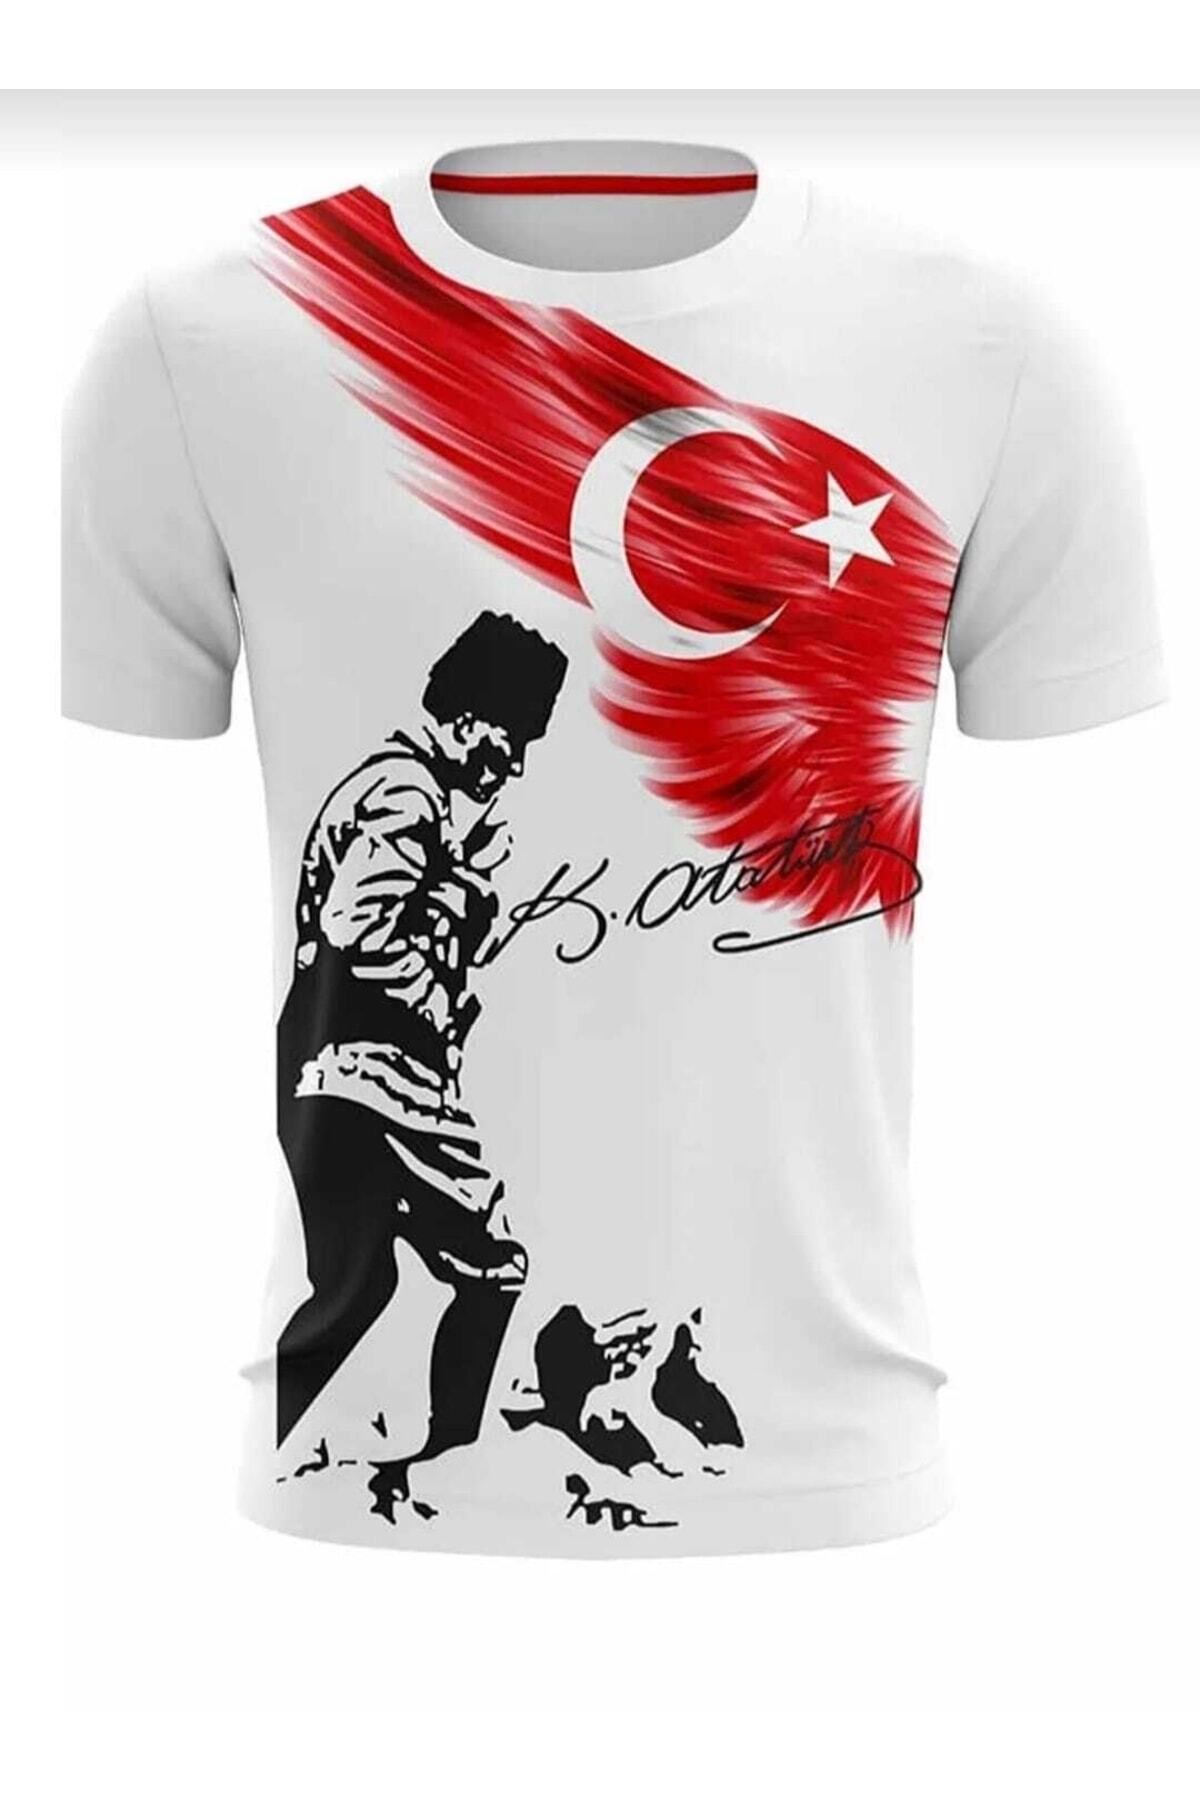 Genel Markalar Unisex 23 Nisan 29 Ekim 19 Mayıs Gösteri Kostüm Atatürk Baskılı Ve Türk Bayraklı Ayyıldızlı Tişört